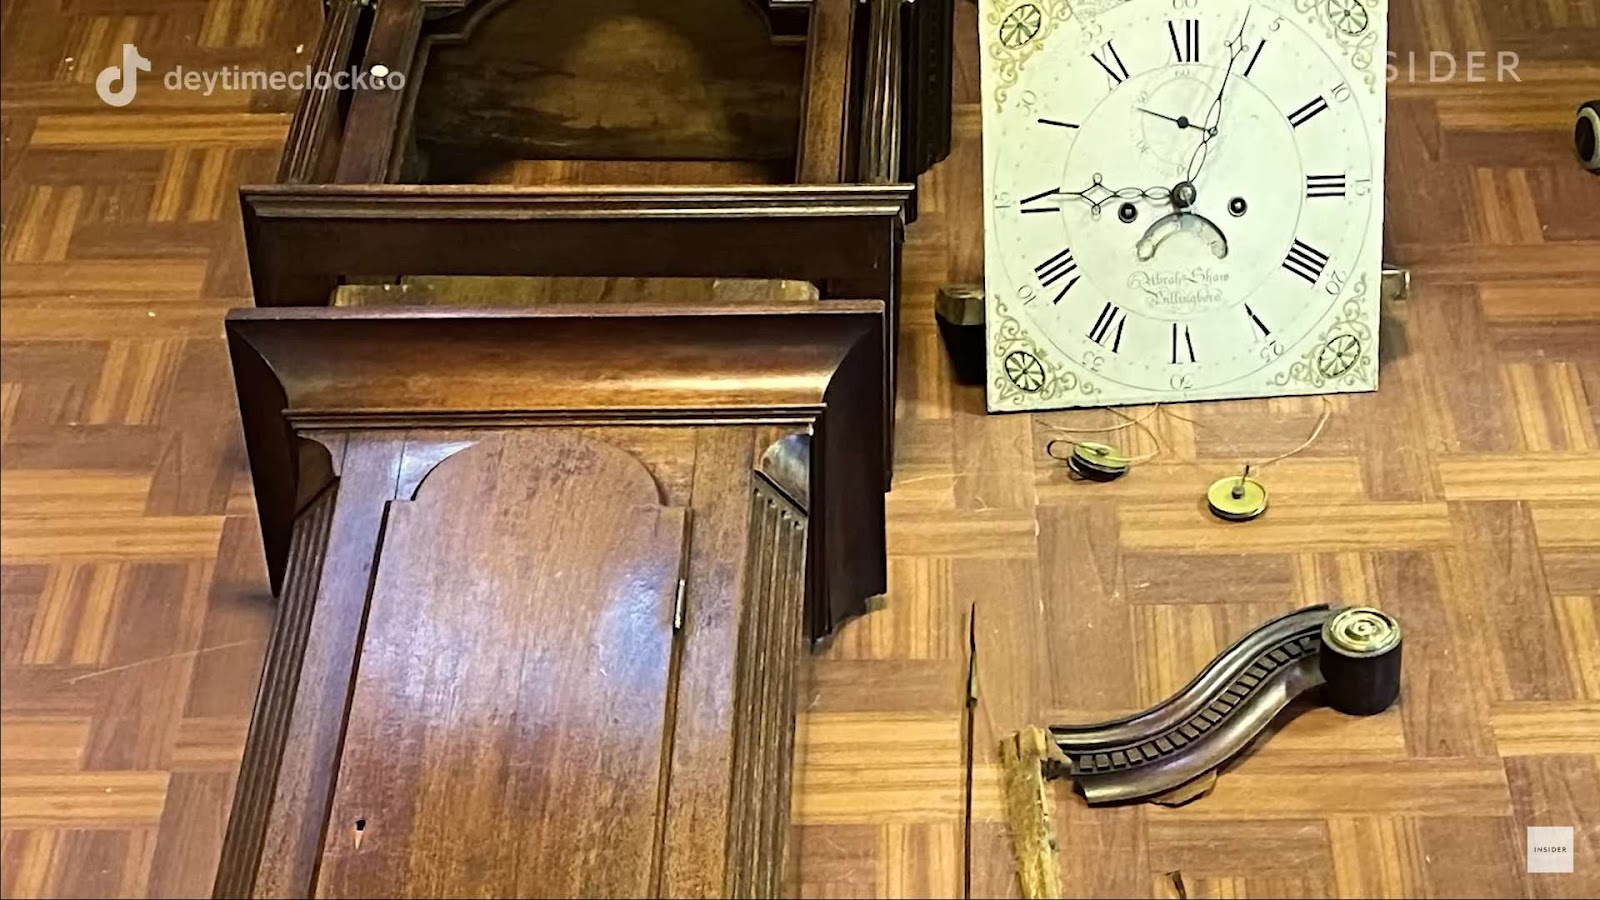 Process of grandfather clock repair